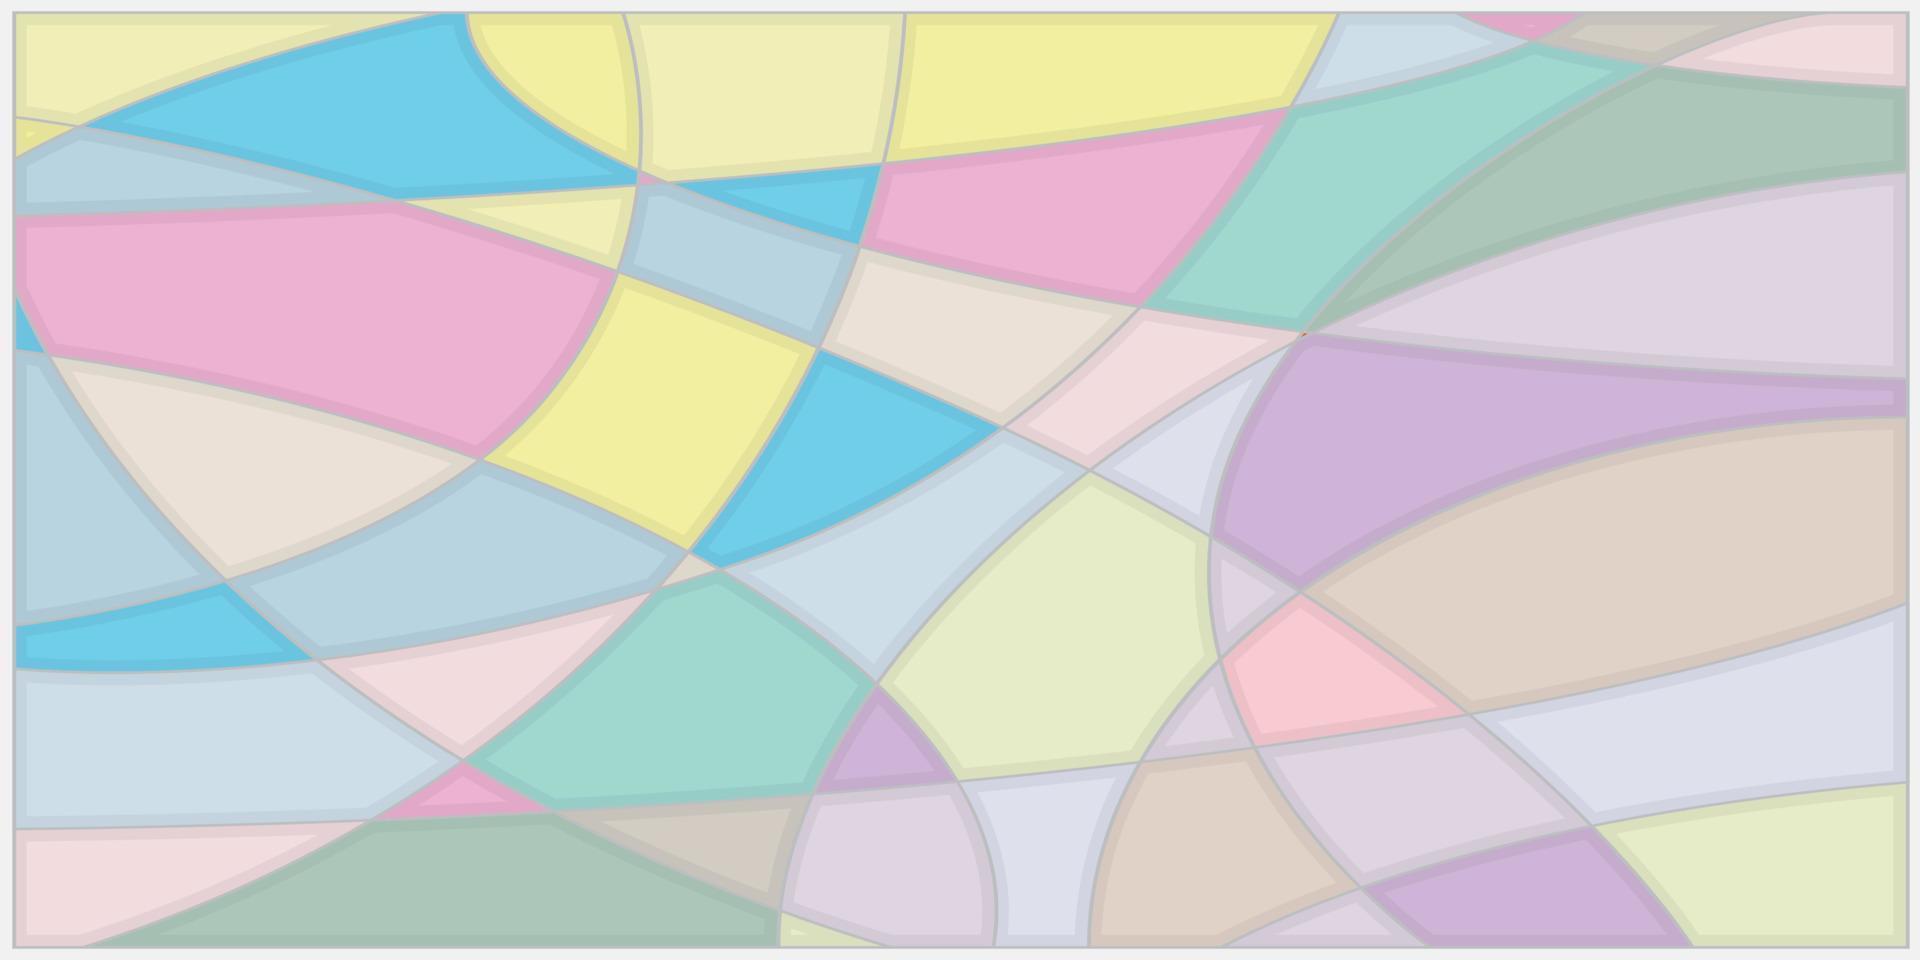 l'image de fond est formée en coupant des lignes pour créer des formes géométriques en utilisant des tons pastel. vecteur